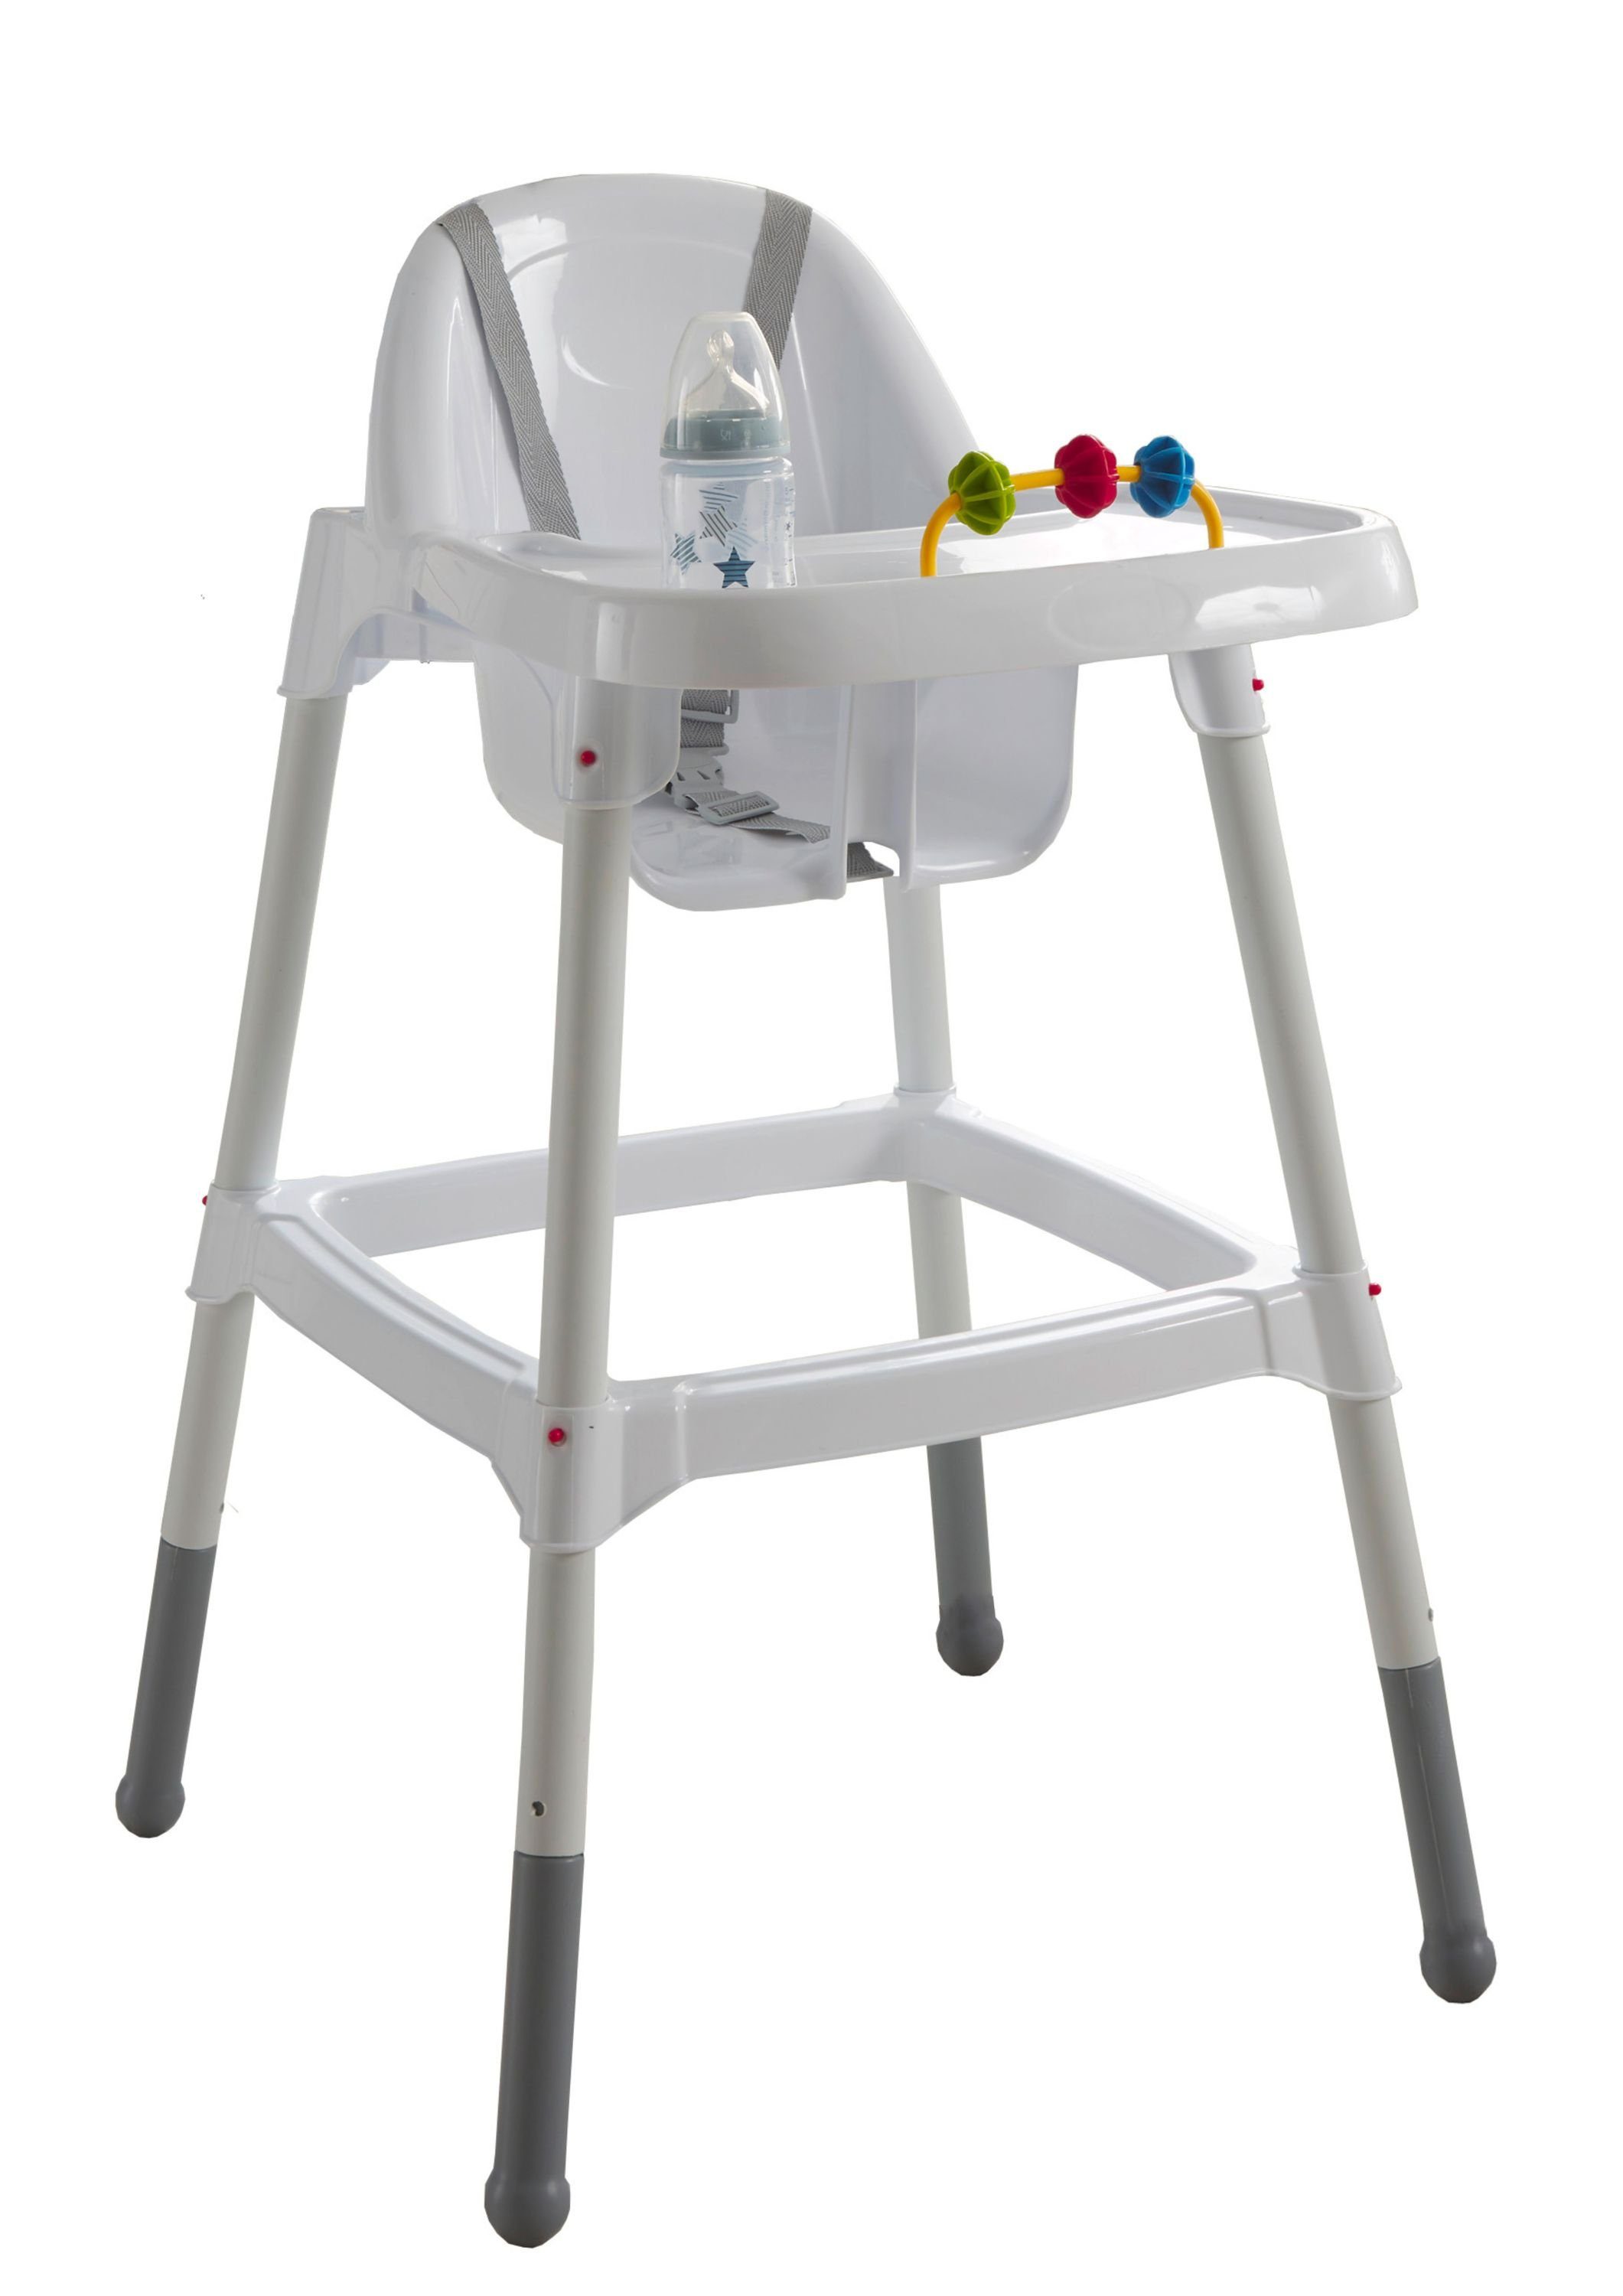 Aileenstore Hochstuhl Oliver (Kein Set), Rausfallschutz, Großer Tisch, Abwischbare Oberfläche, Integriertes Spielzeug, Sitzkomfort